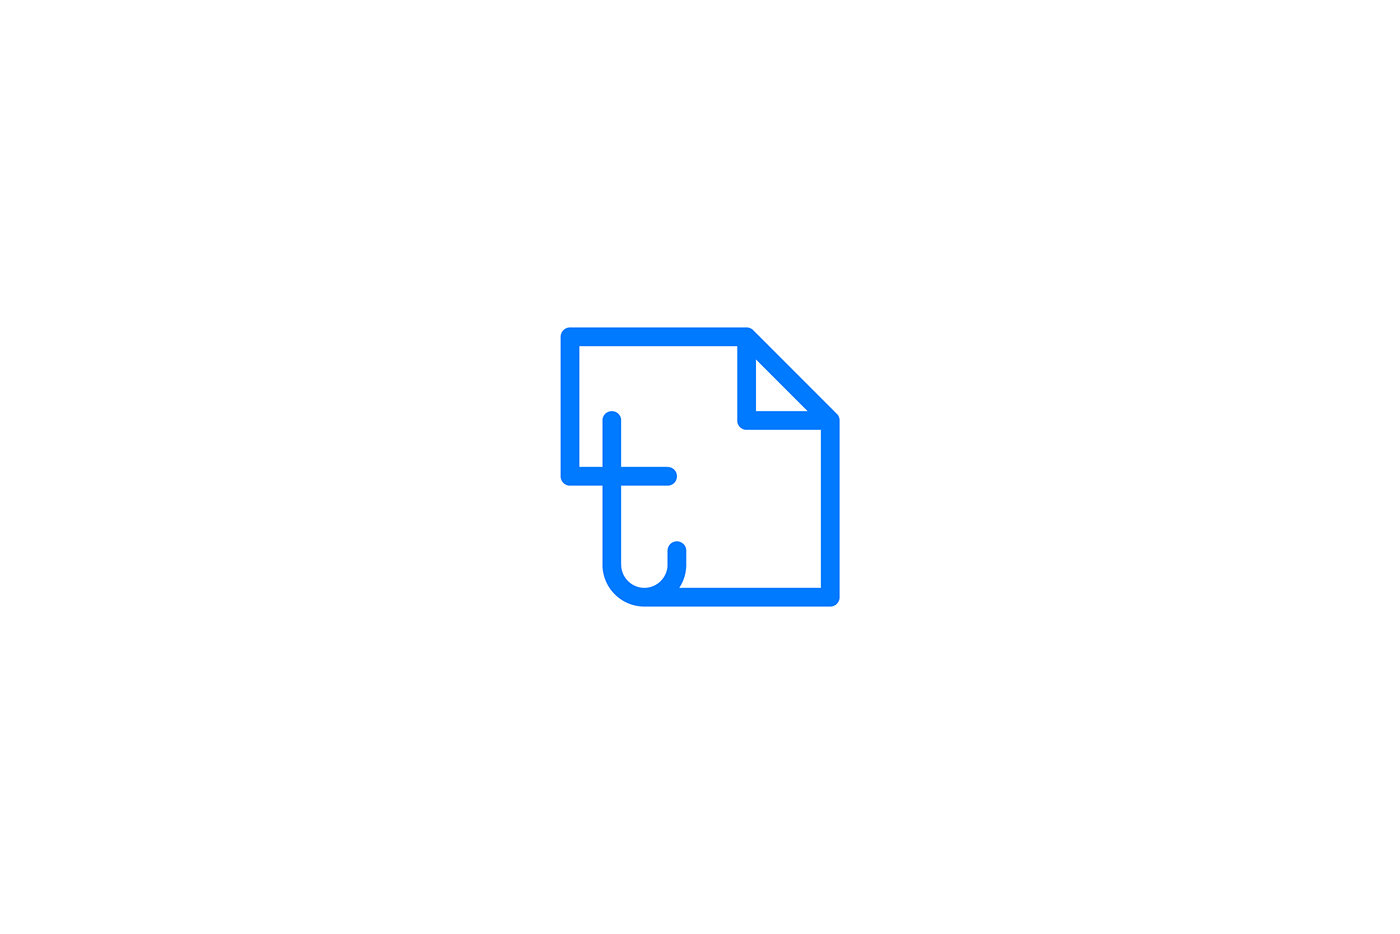 typeset typeset.io paper Research Paper blue logo minimal simple modern vishnusathyan